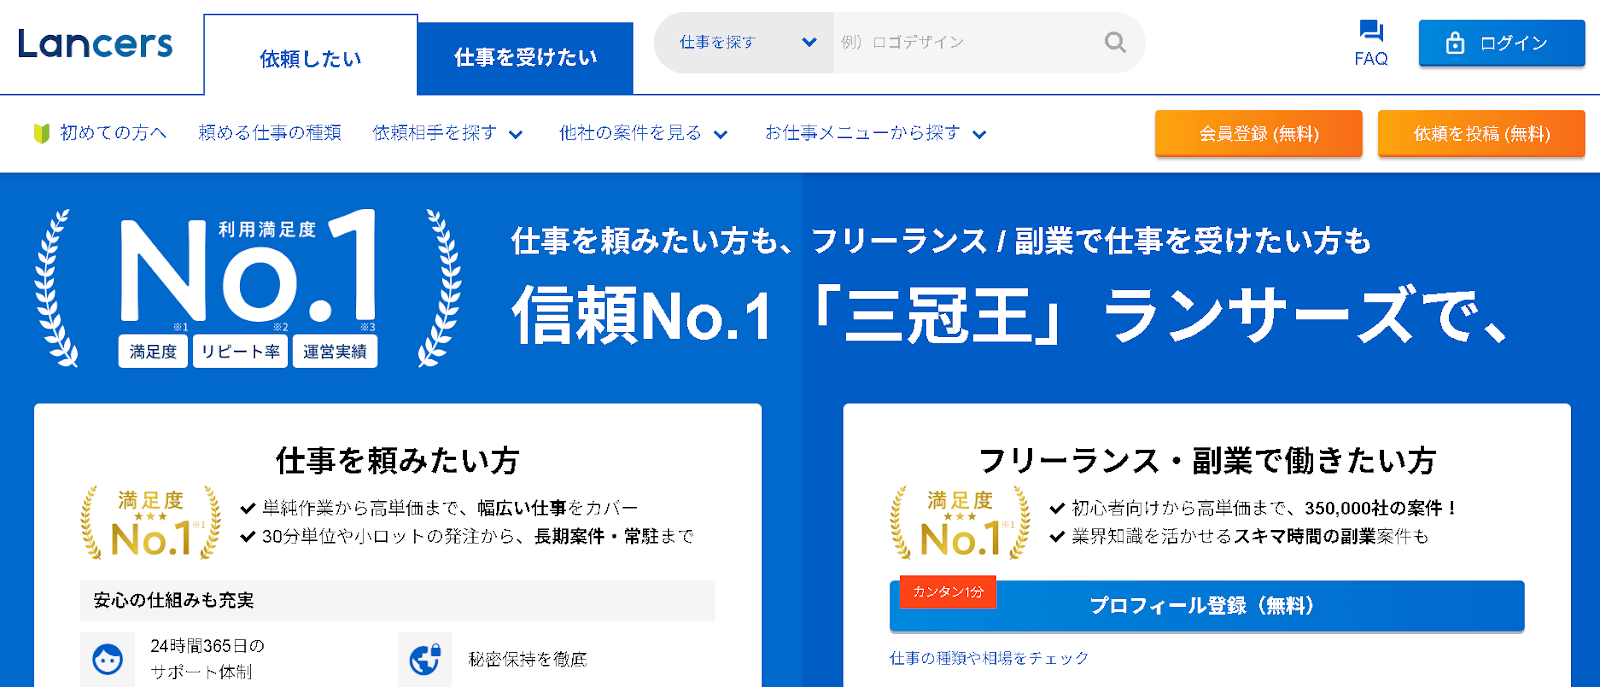 ランサーズ _ 日本最大級のクラウドソーシング仕事依頼サイト